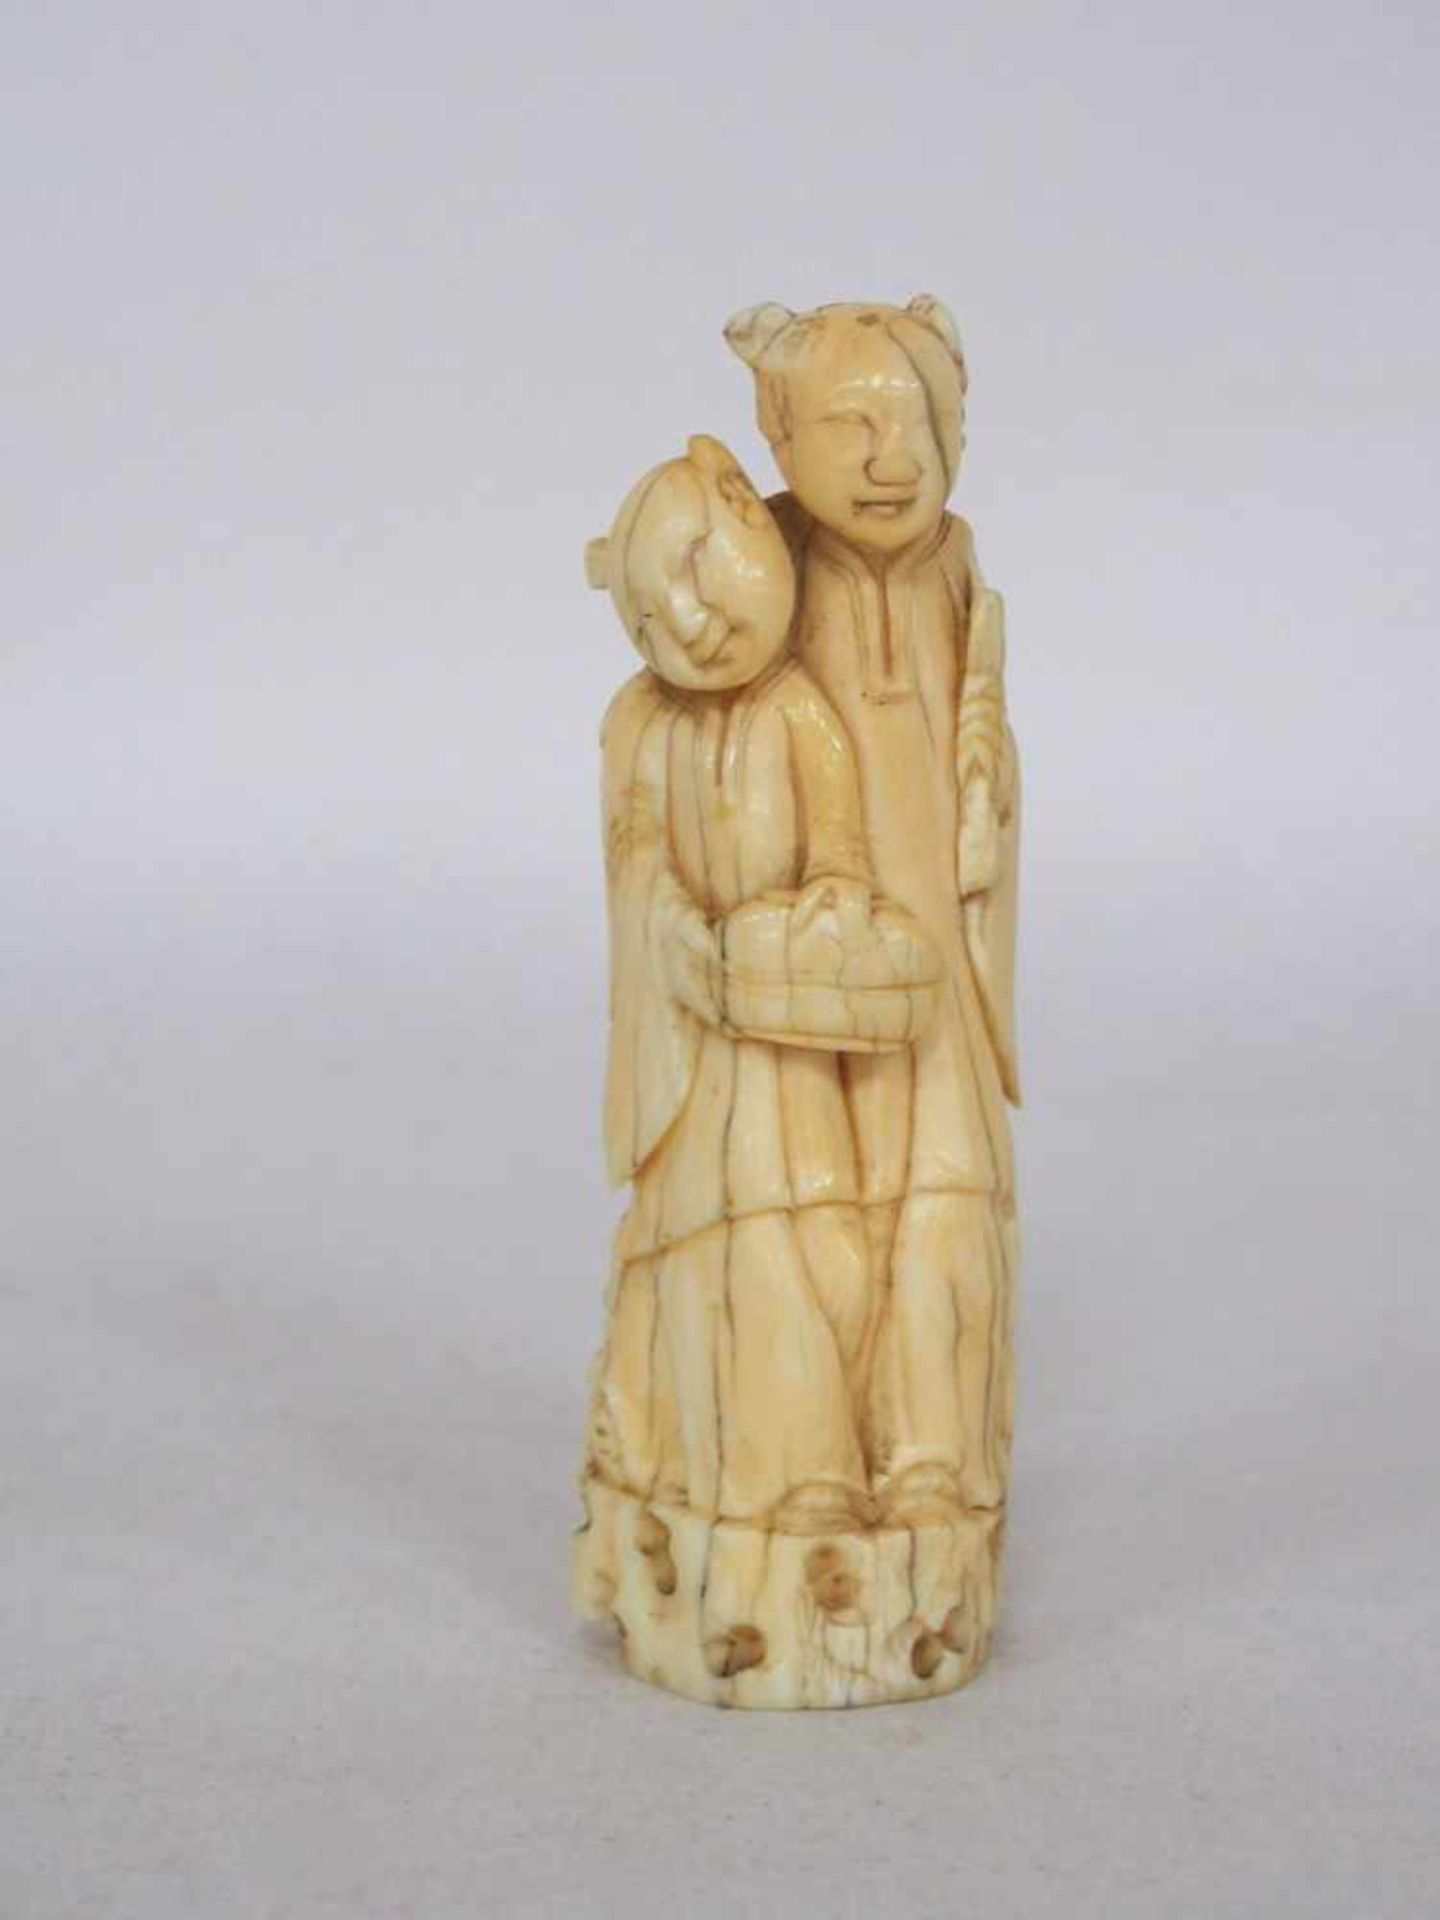 Mutter und TochterElfenbein, vollrund geschnitzt, China 19. Jahrhundert, Höhe 11 cm (ein